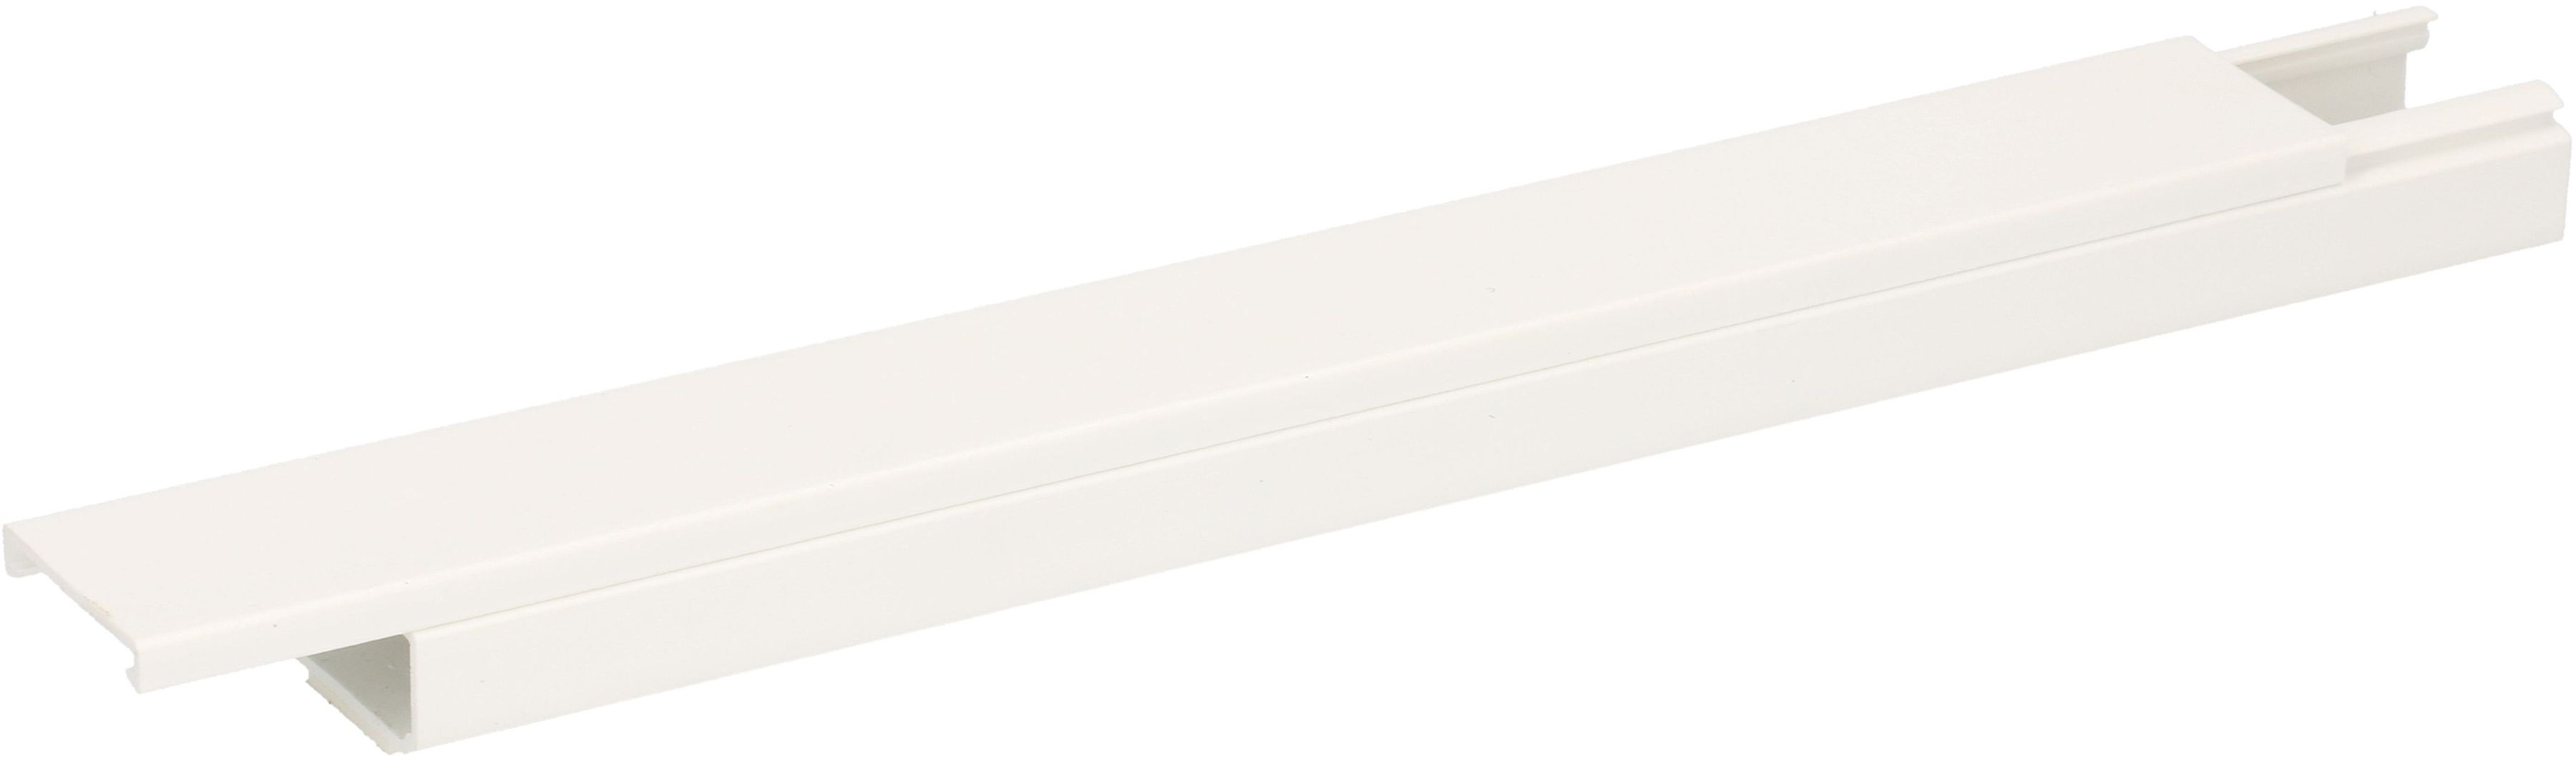 Goulotte 25x16mm blanc auto-adhésif 2m